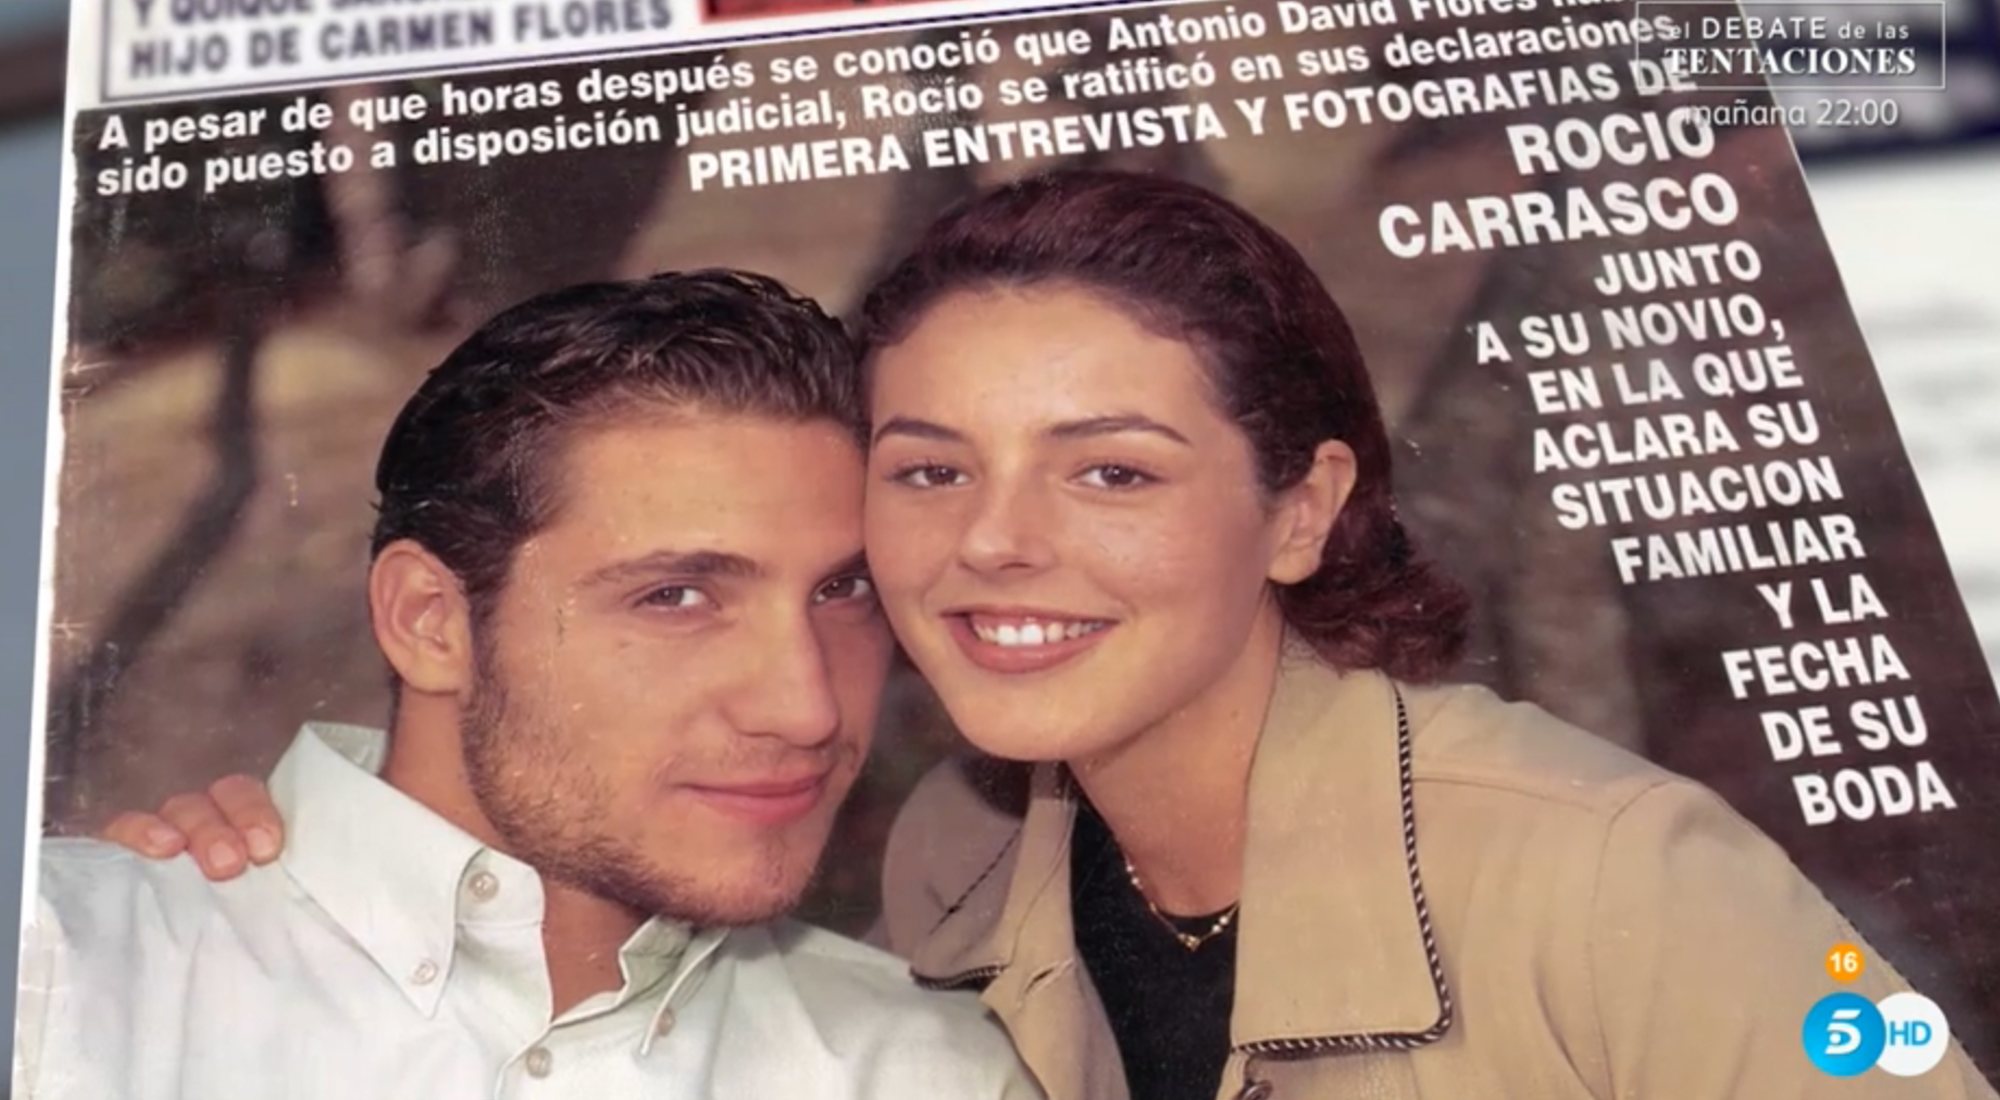 Rocío Carrasco y Antonio David Flores en uno de sus posados